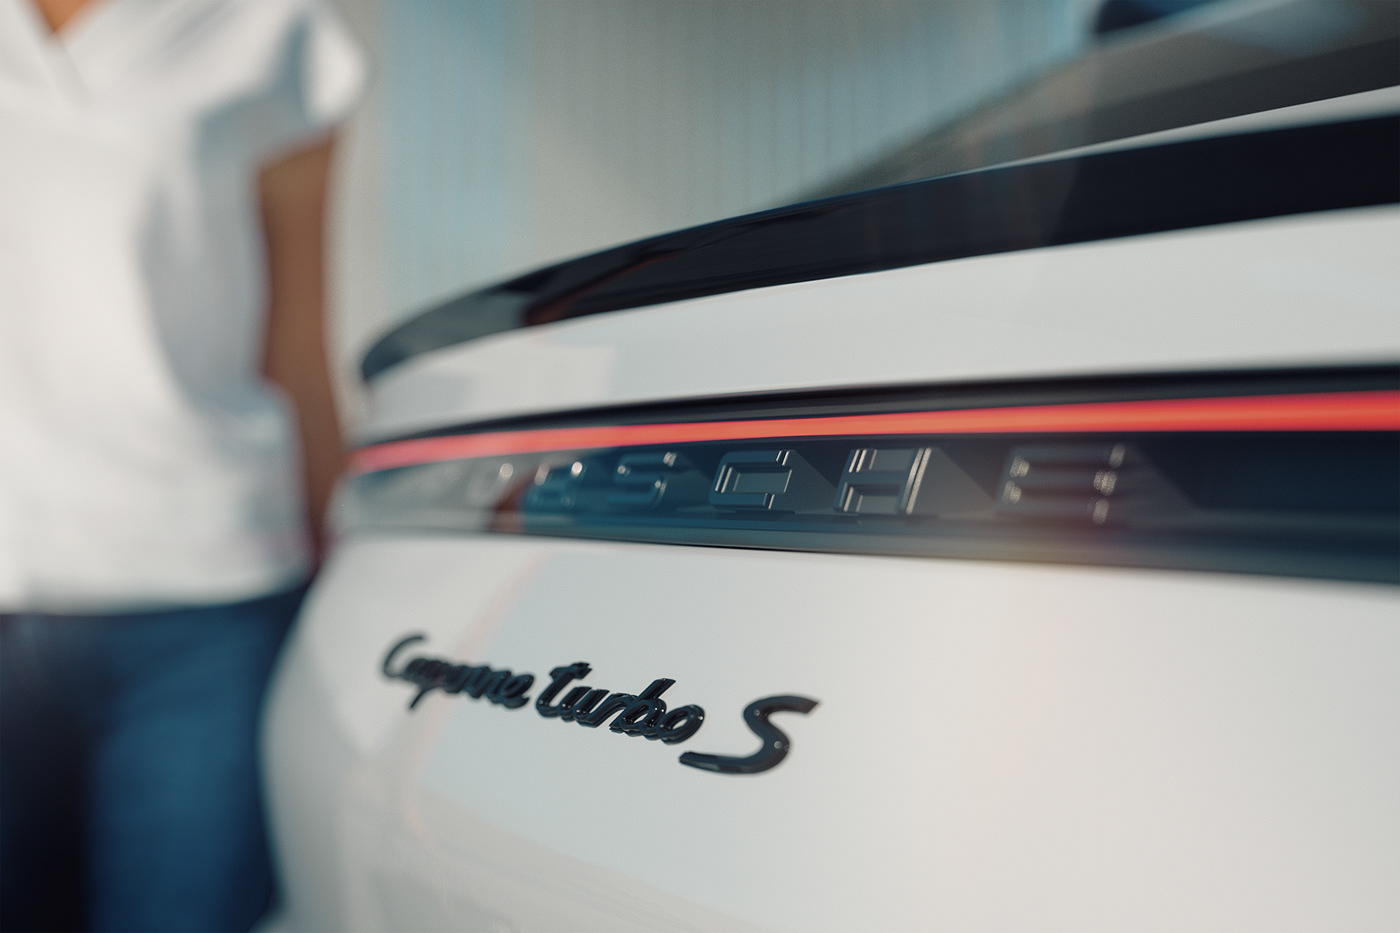 Cayenne CGI cgiart CGIAUTOMOTIVE FStorm Render Porsche Render rendering turbo